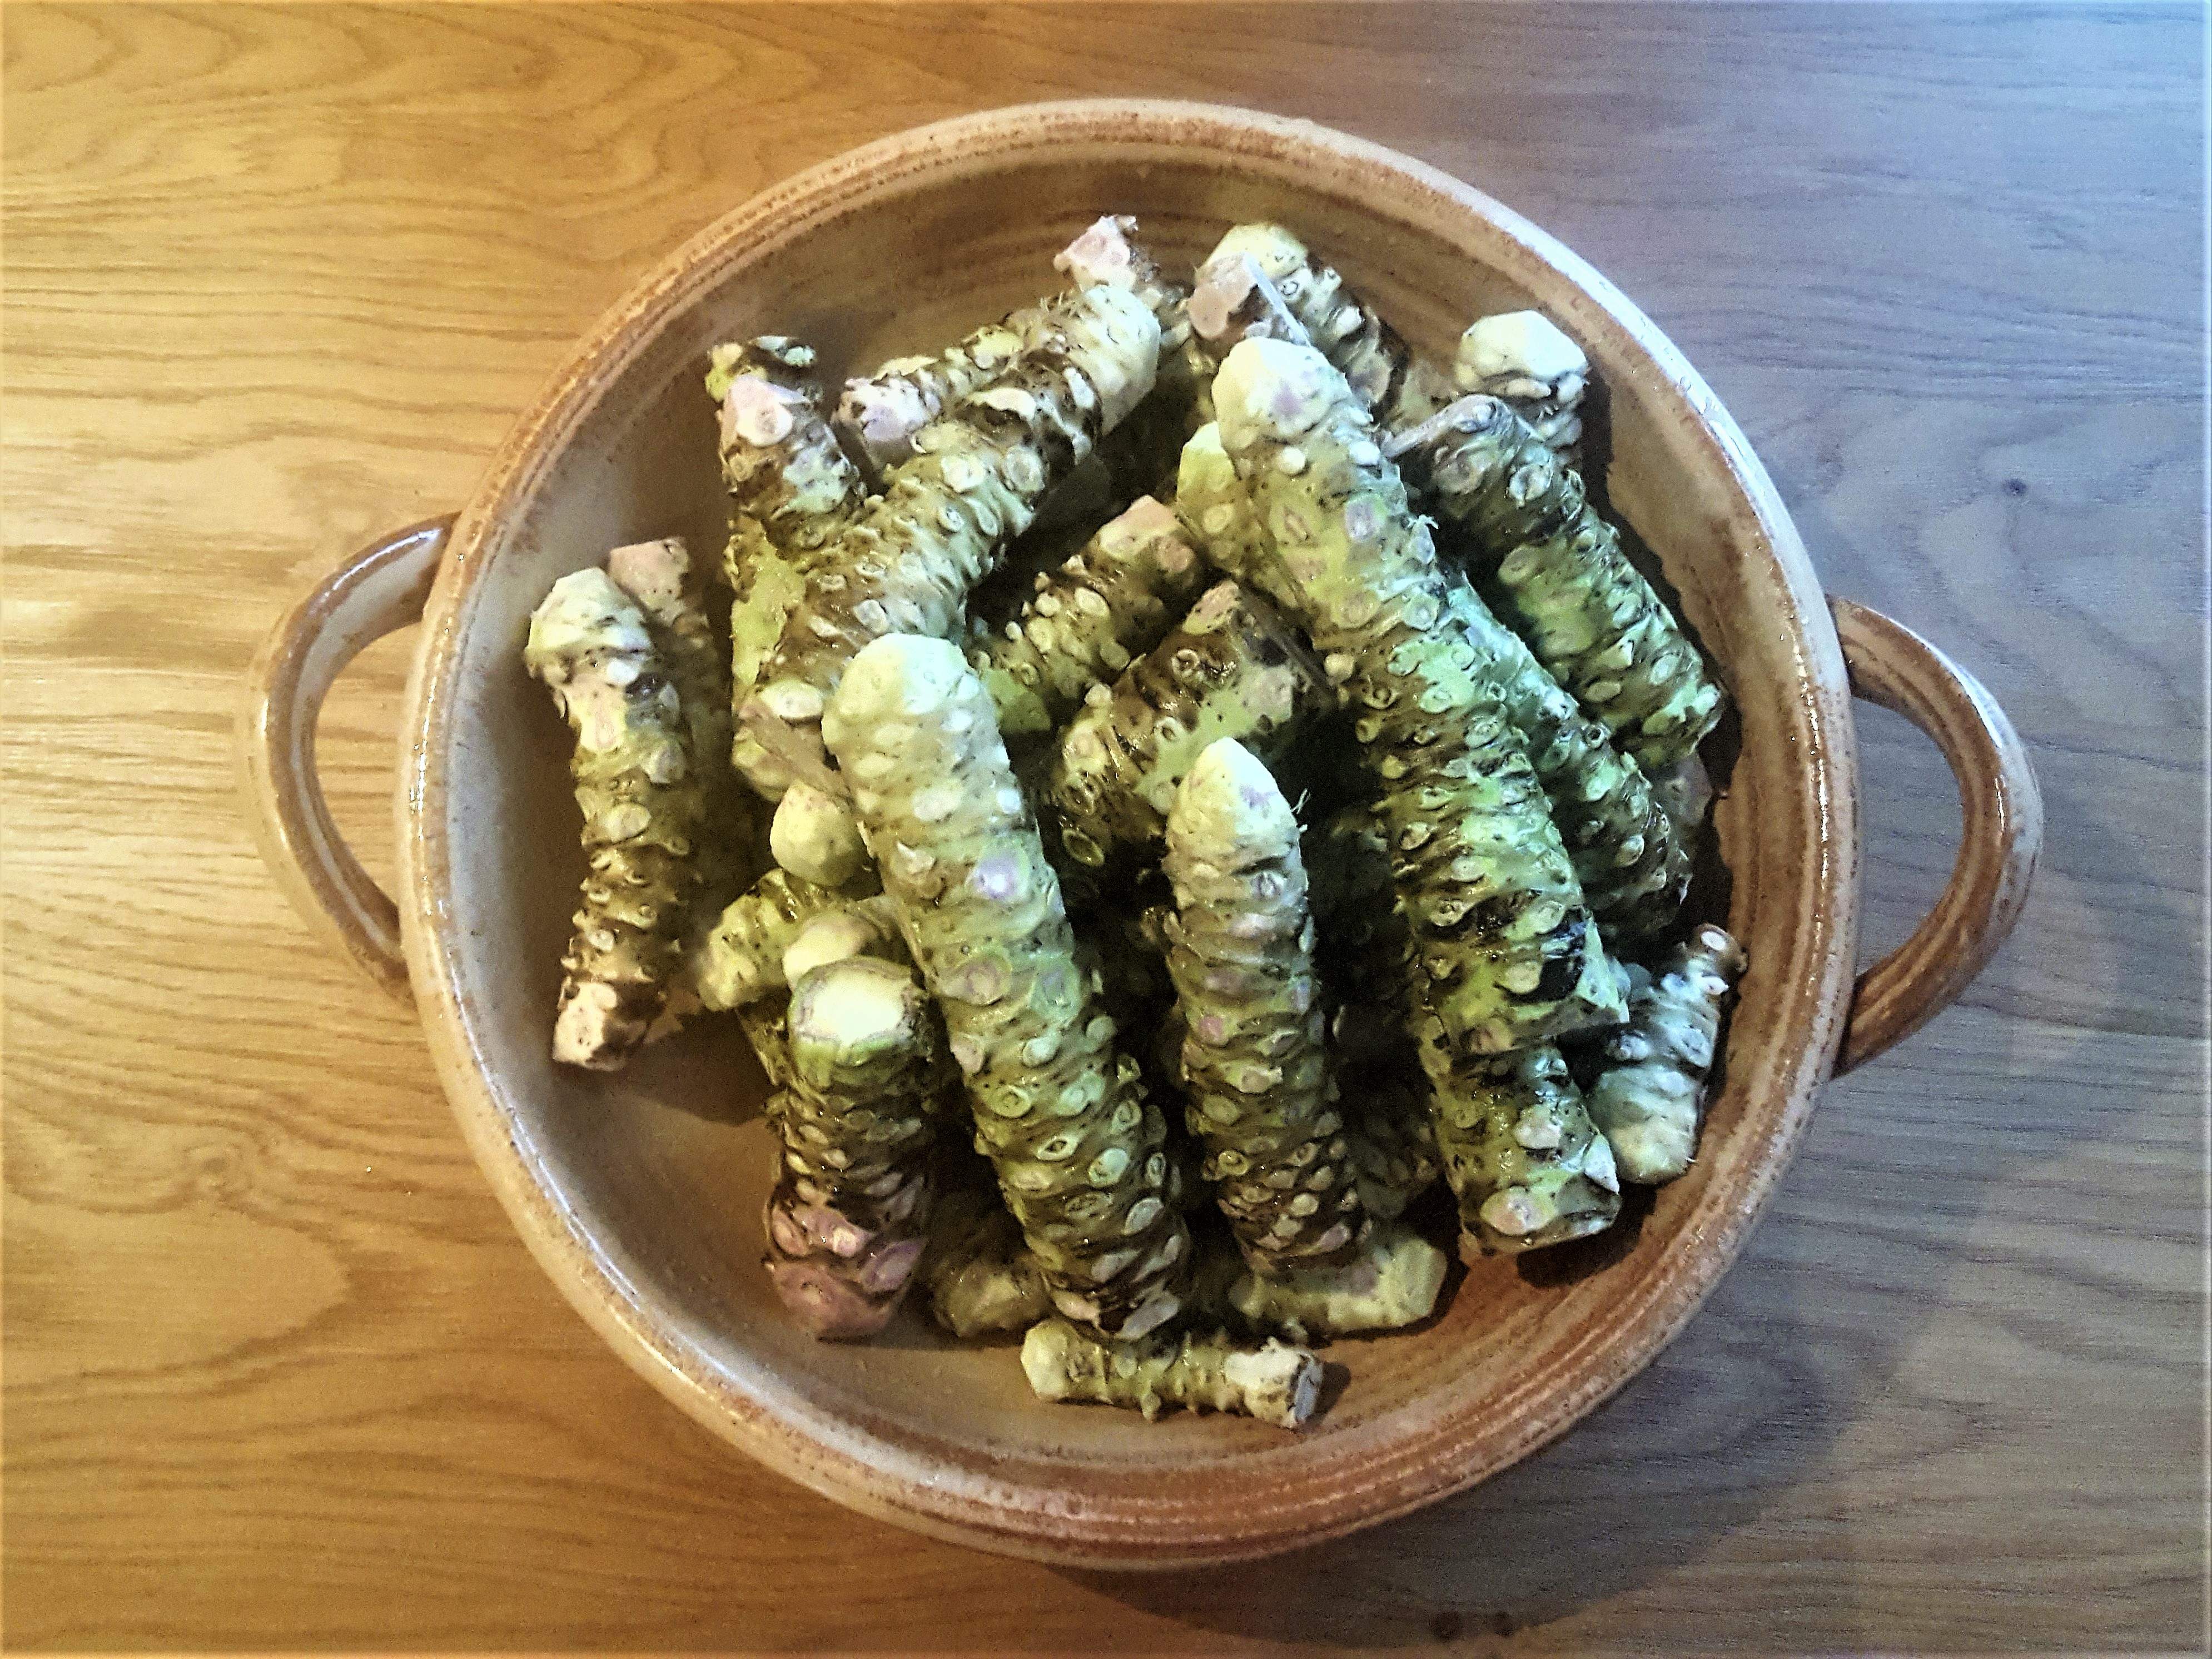 Wasabi rhizomes are ready to enjoy!